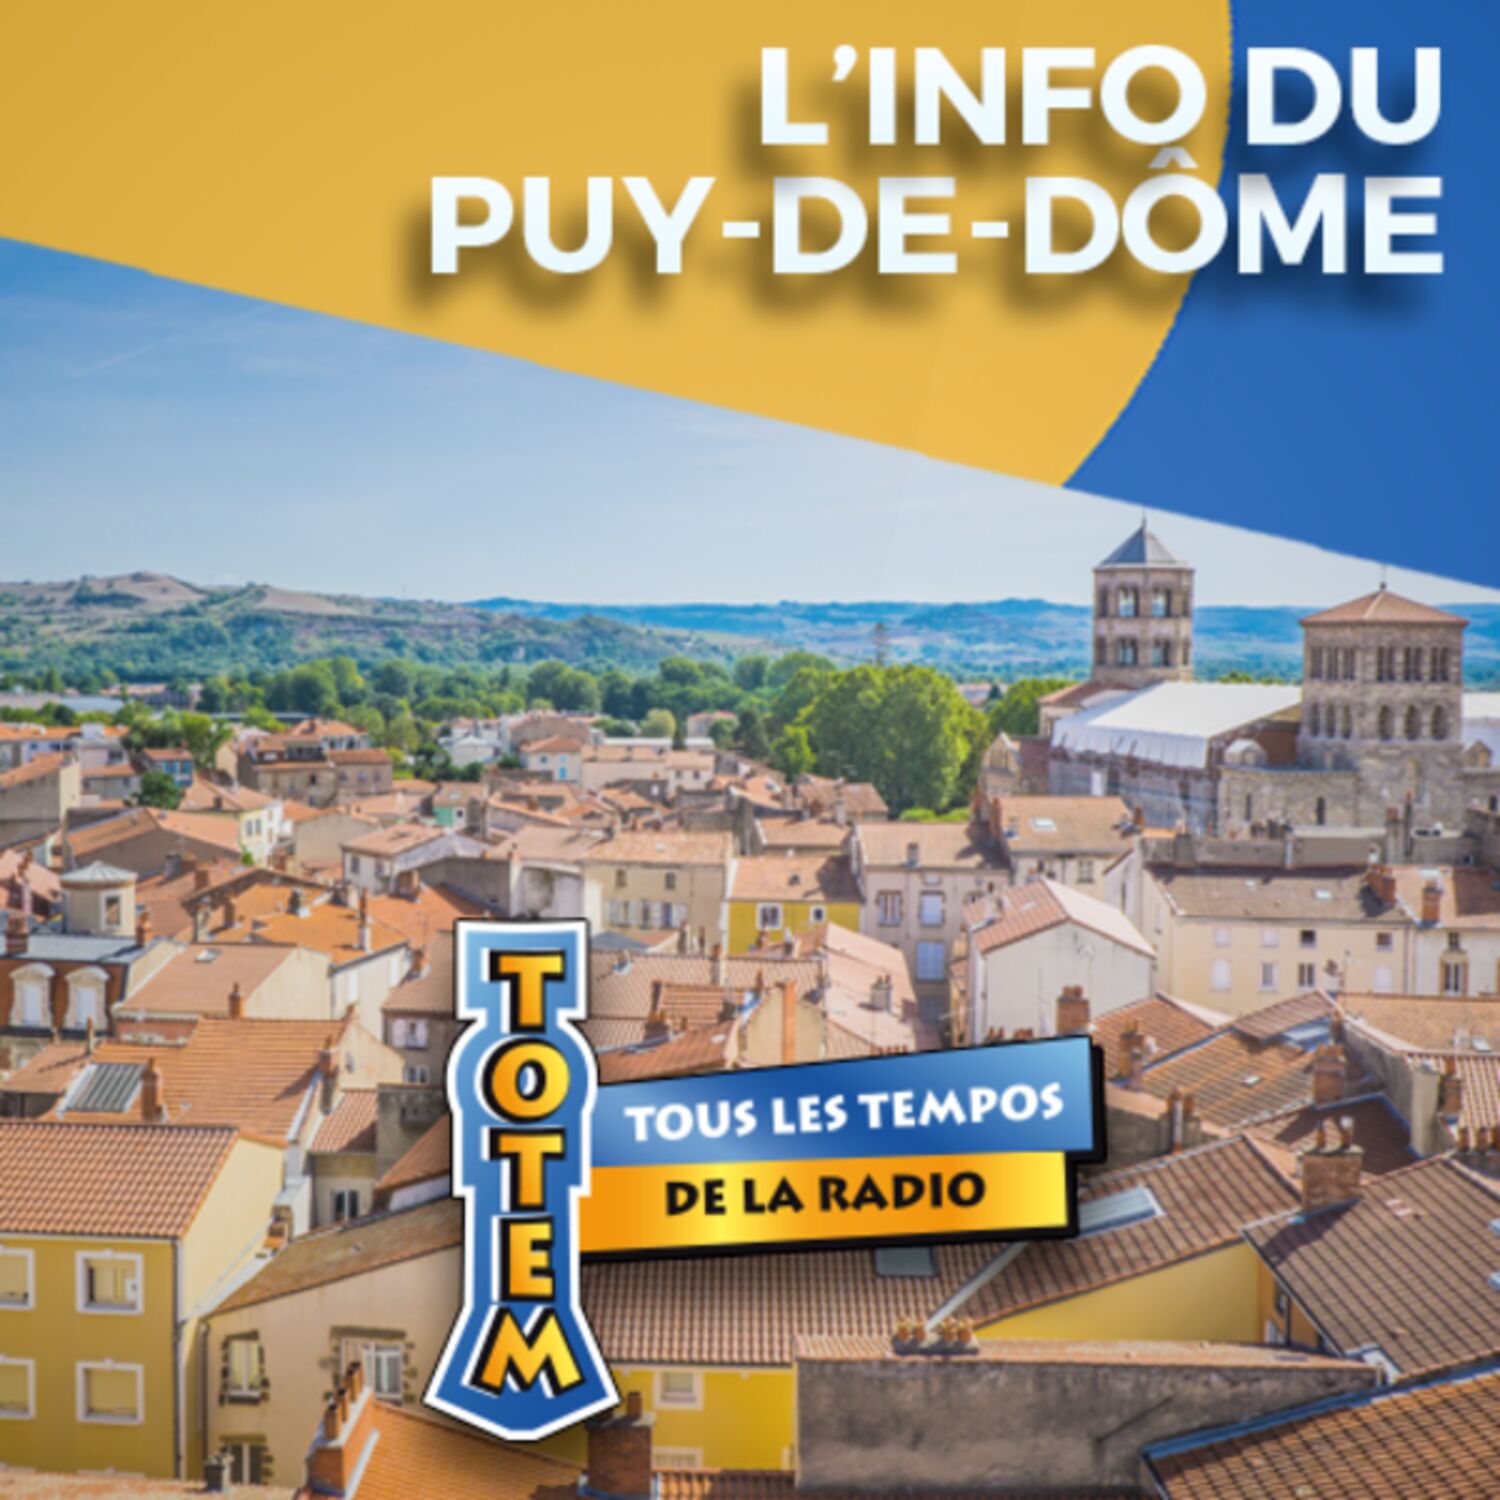 L'info du Puy-de-Dôme du 05/05/23 à 18h59